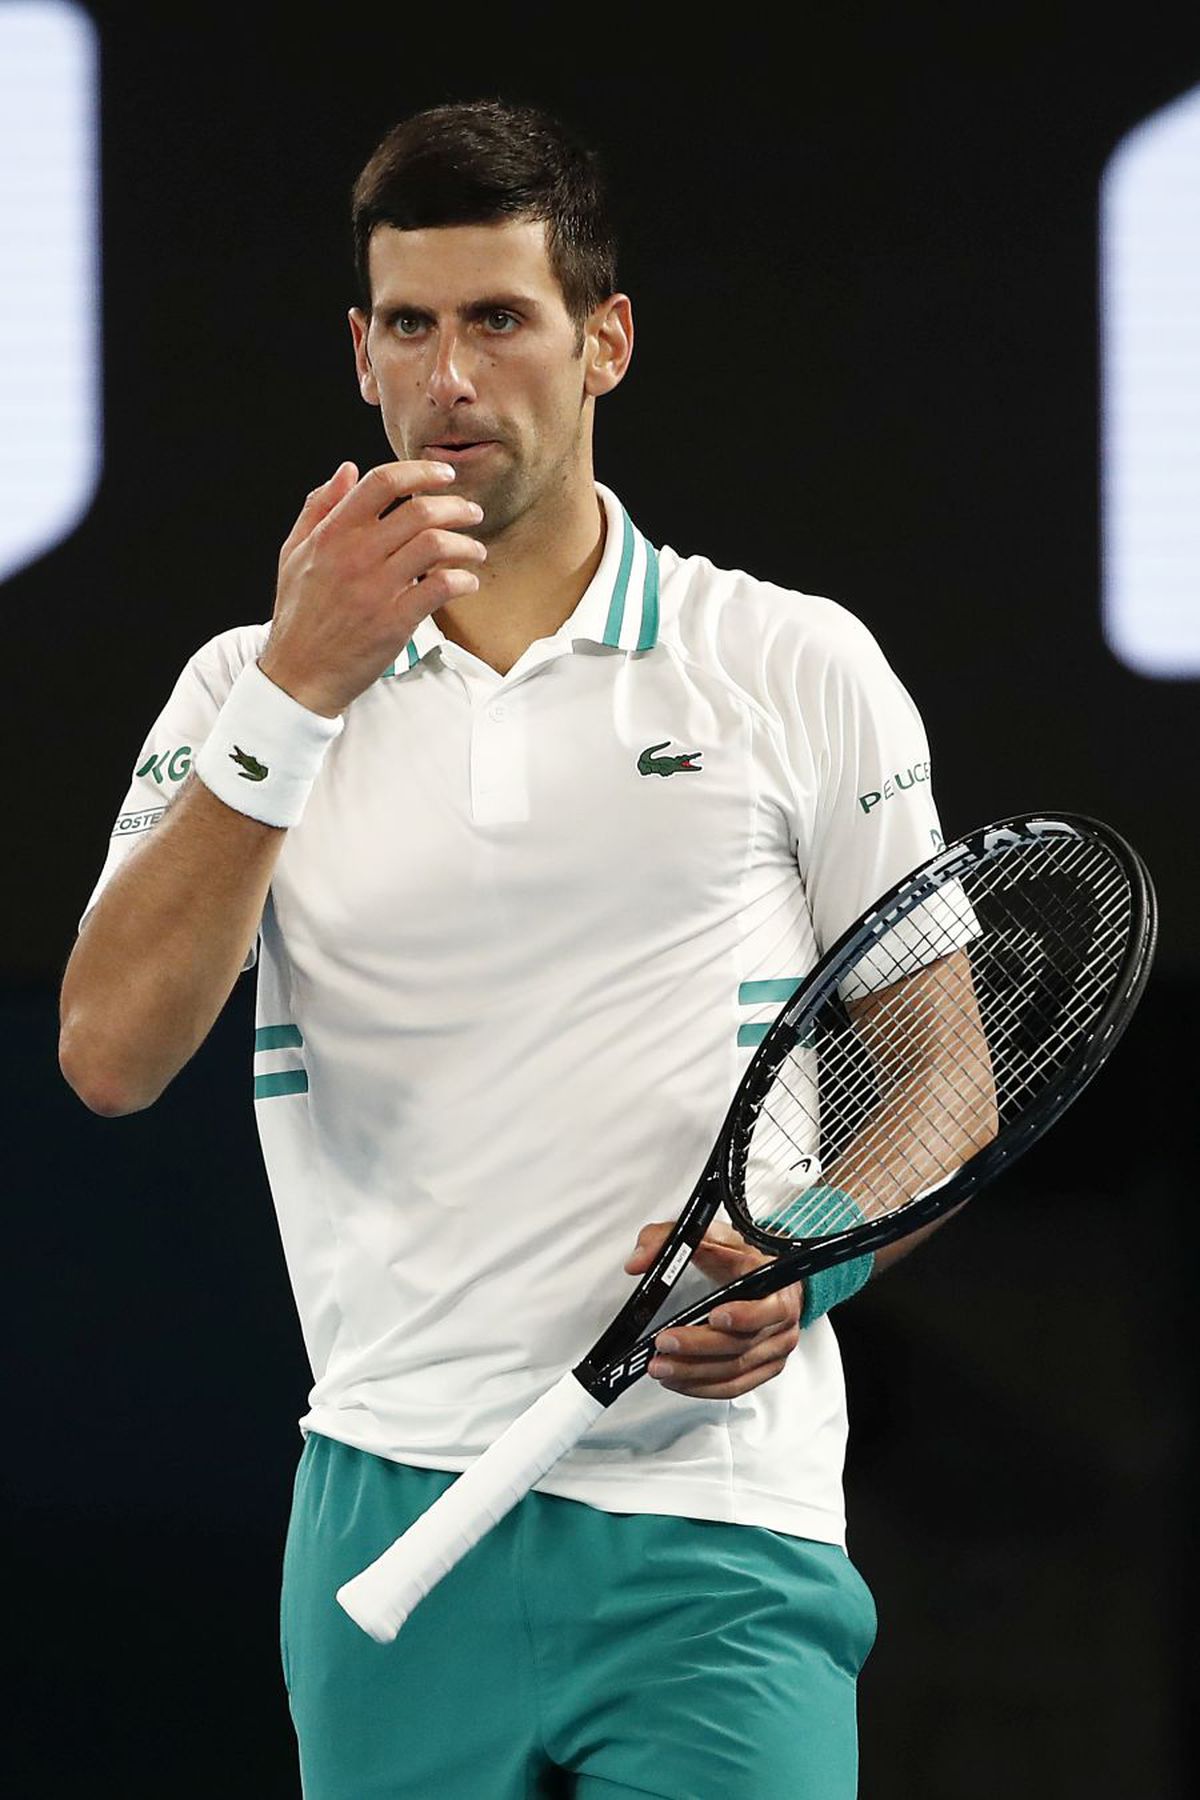 Andy Murray, gest categoric după ce a ratat Australian Open din cauza COVID-19: „Le-am dat «unfollow» tuturor jucătorilor”